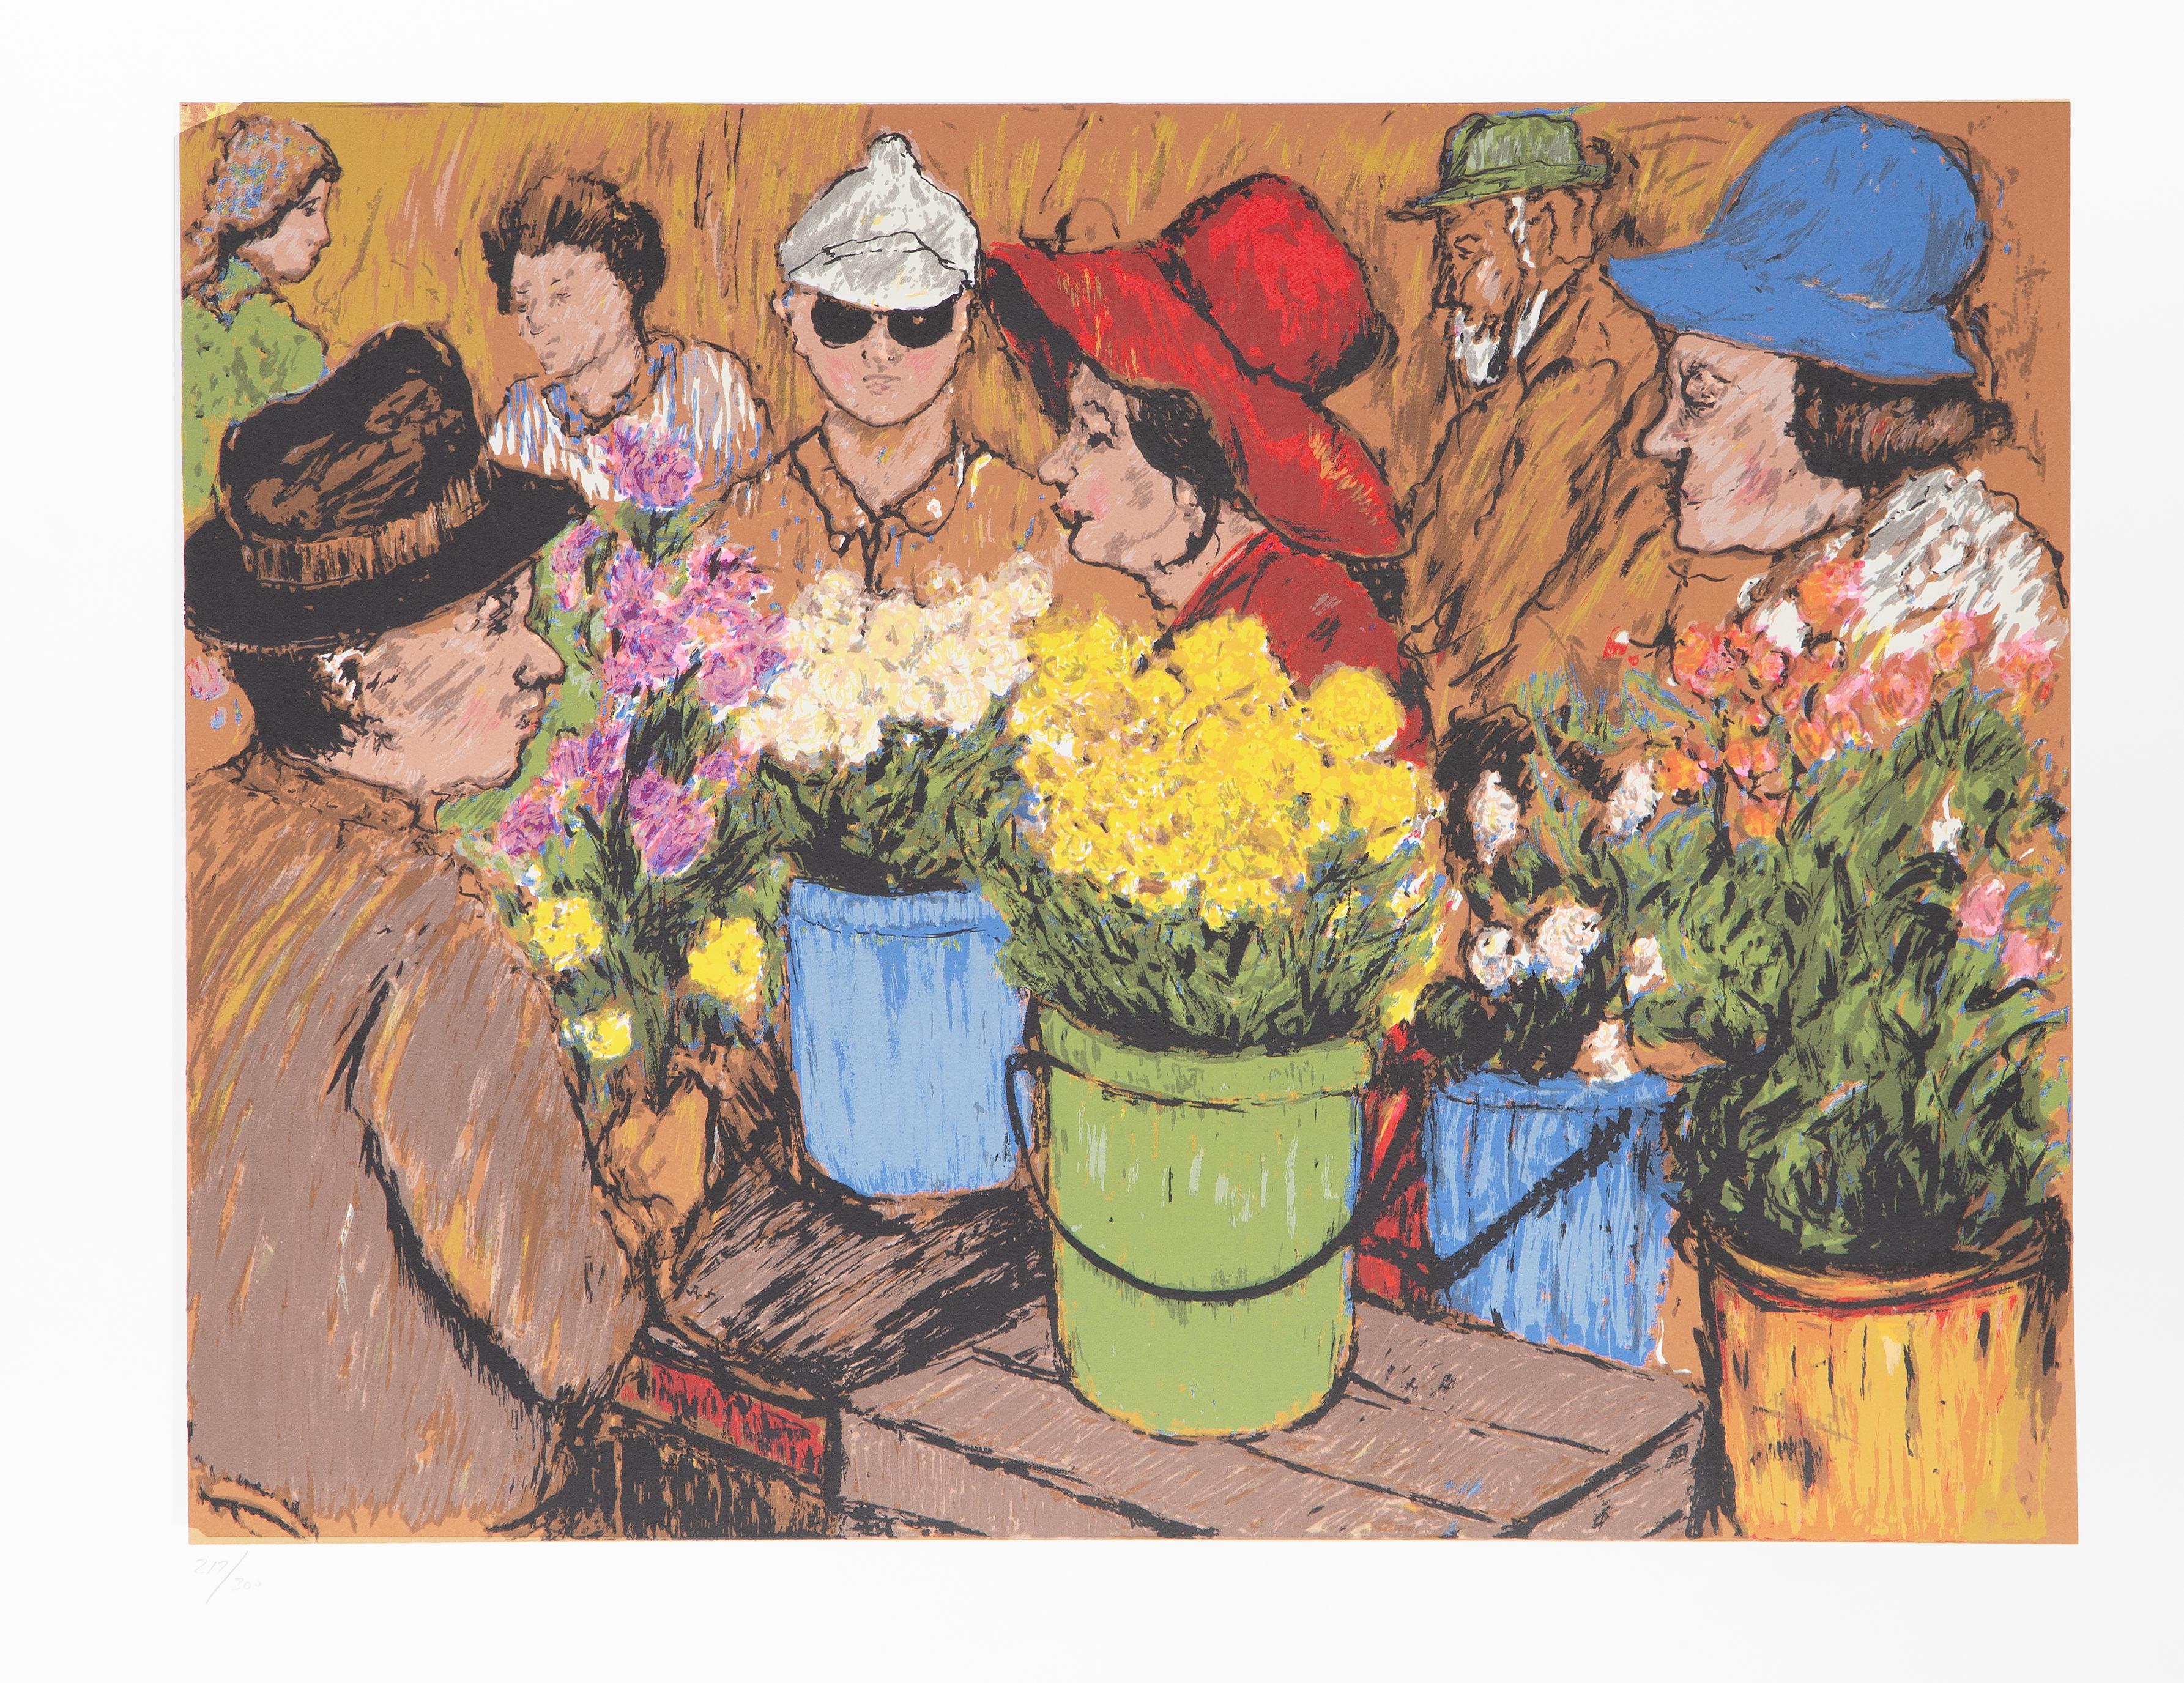 Marché aux fleurs
David Azuz, Israélien/Français (1942-2014)
Date : circa 1980
Lithographie, numérotée au crayon
Edition de 217/300
Taille de l'image : 19.75 x 25.75 pouces
Taille : 26 x 32.5 in. (66.04 x 82.55 cm)